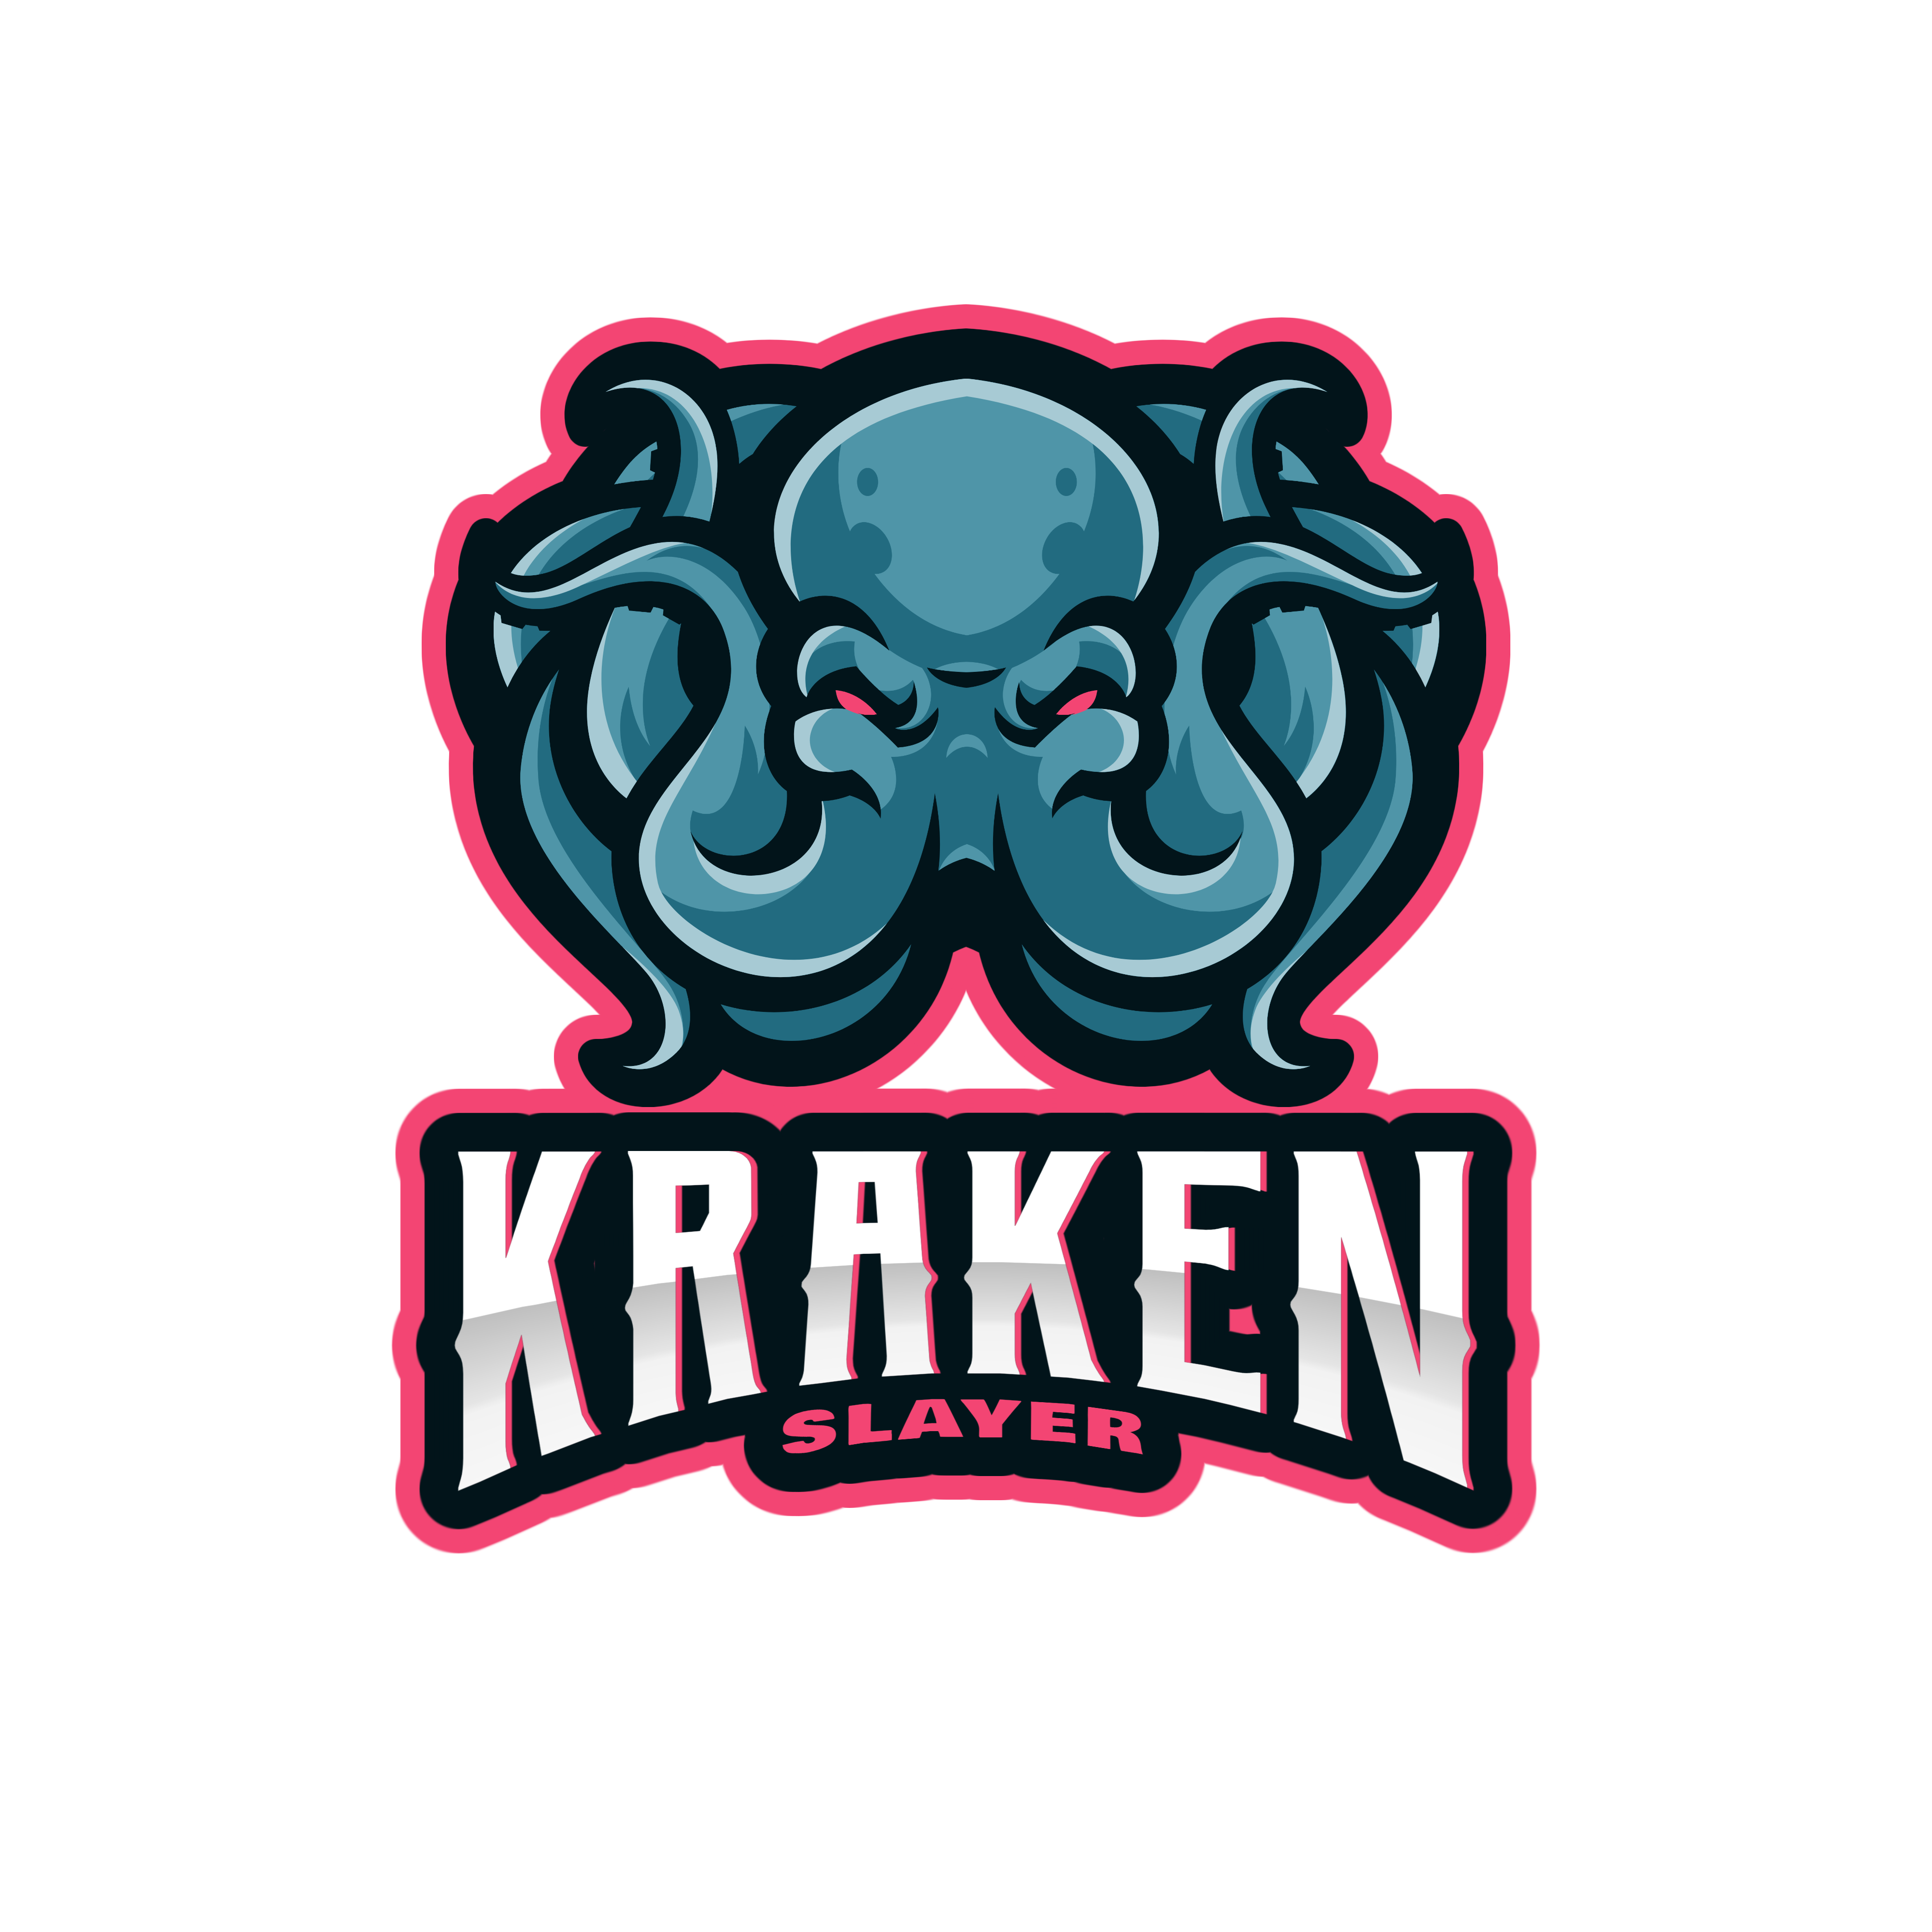 Team Day of Giving Kraken Slayers's logo